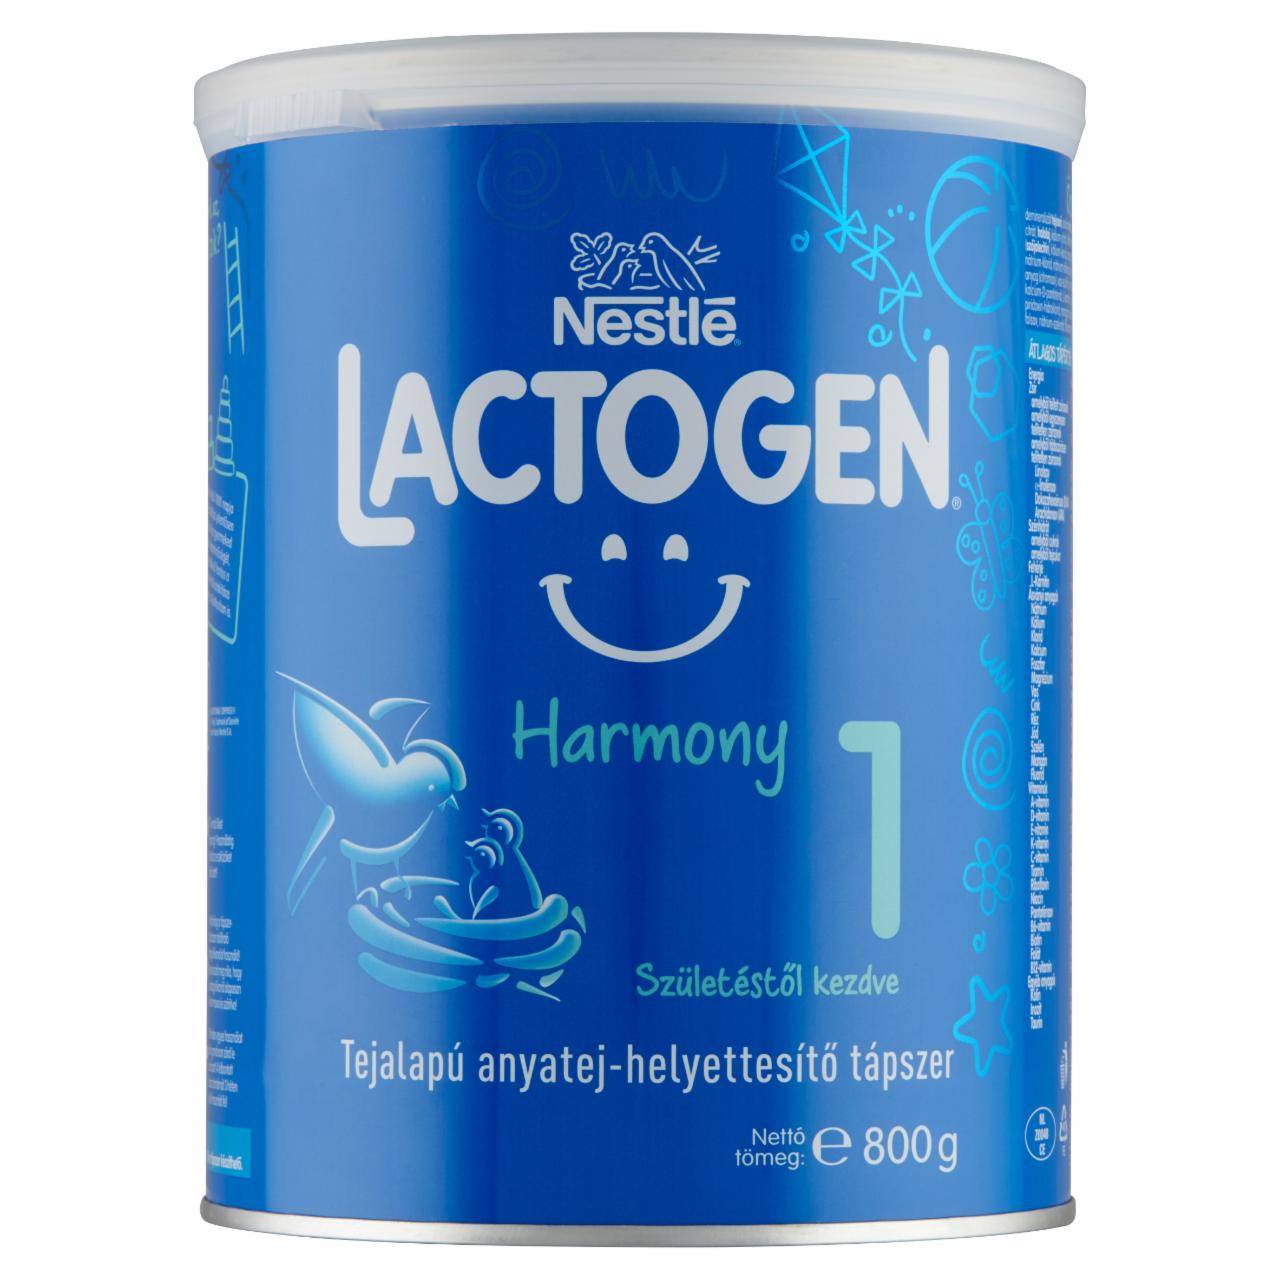 Képek - Nestlé Lactogen Harmony 1 tejalapú anyatej-helyettesítő tápszer születéstől kezdve 800 g